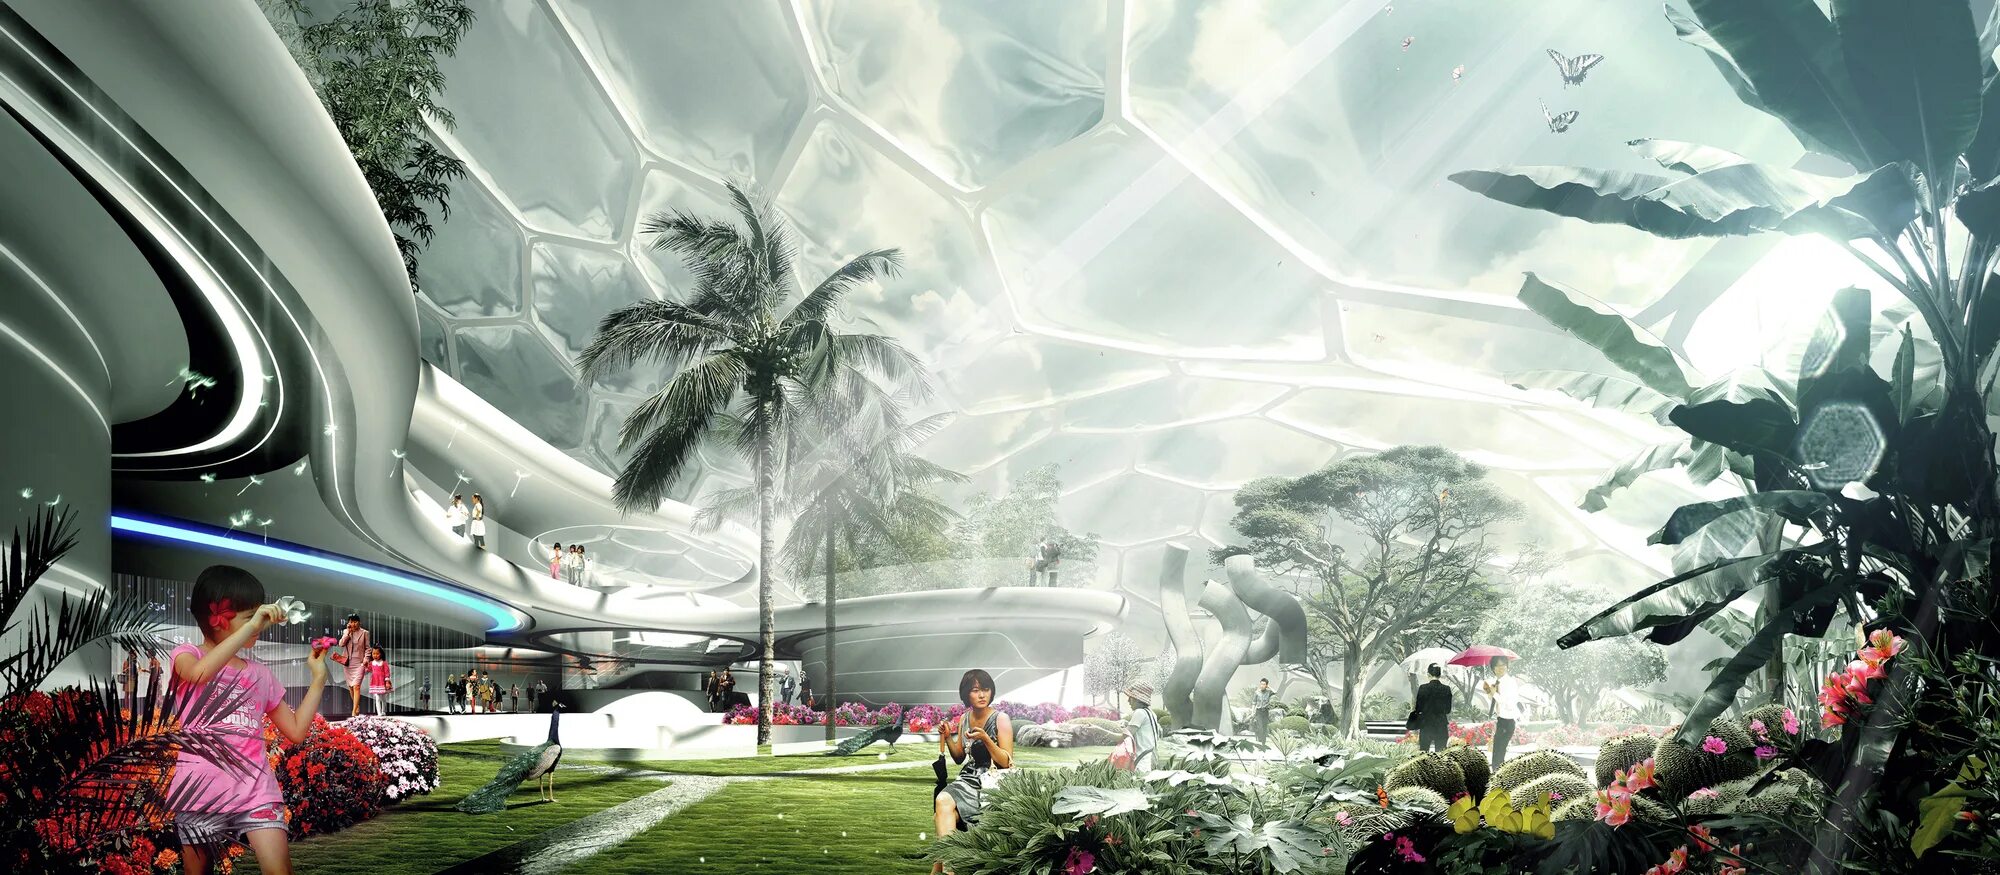 Homes of the future. Природа будущего. Растения будущего. Город под куполом. Будущее.